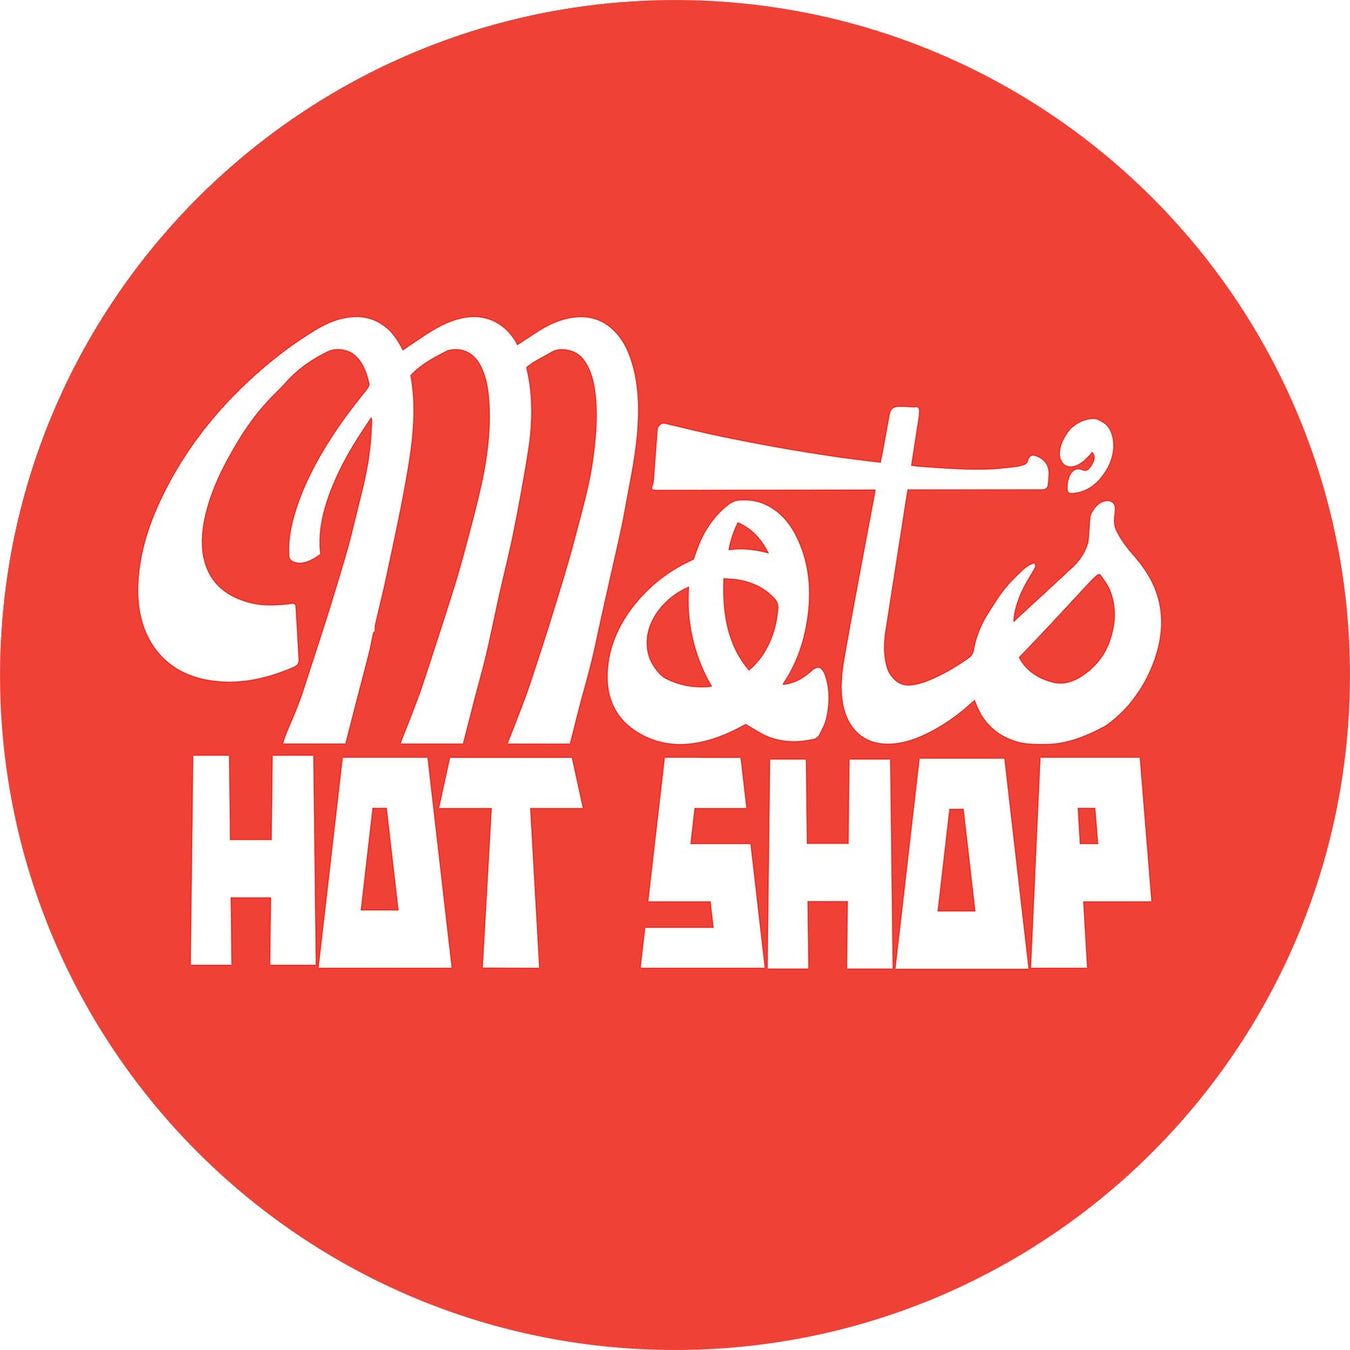 Mat's Hot Shop